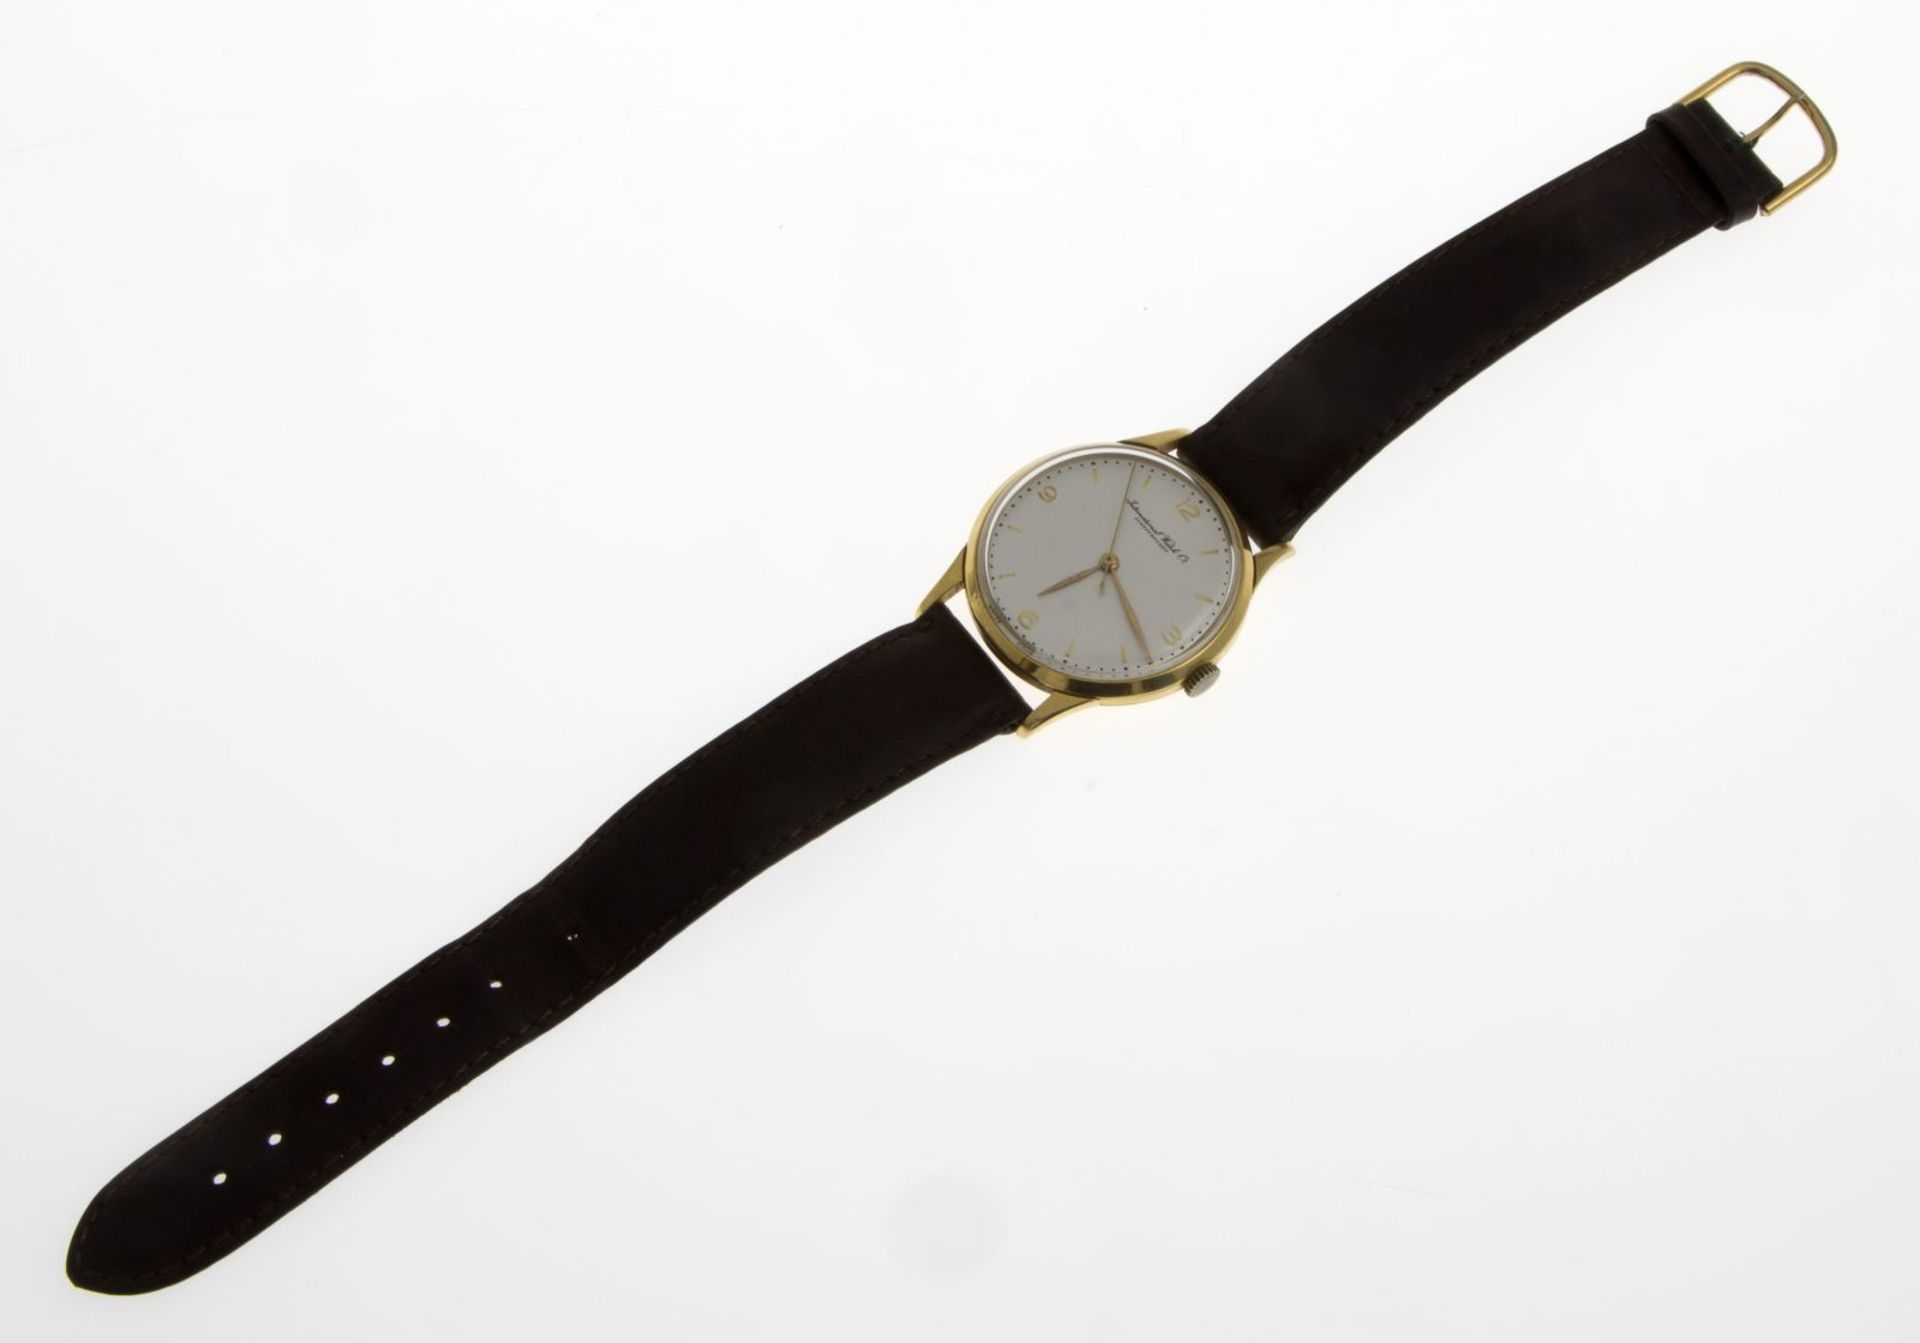 Elegante IWC-ArmbanduhrRundes Gehäuse aus Gelbgold 750. Plexiglas. Versilbertes Zifferblatt mit - Bild 3 aus 3